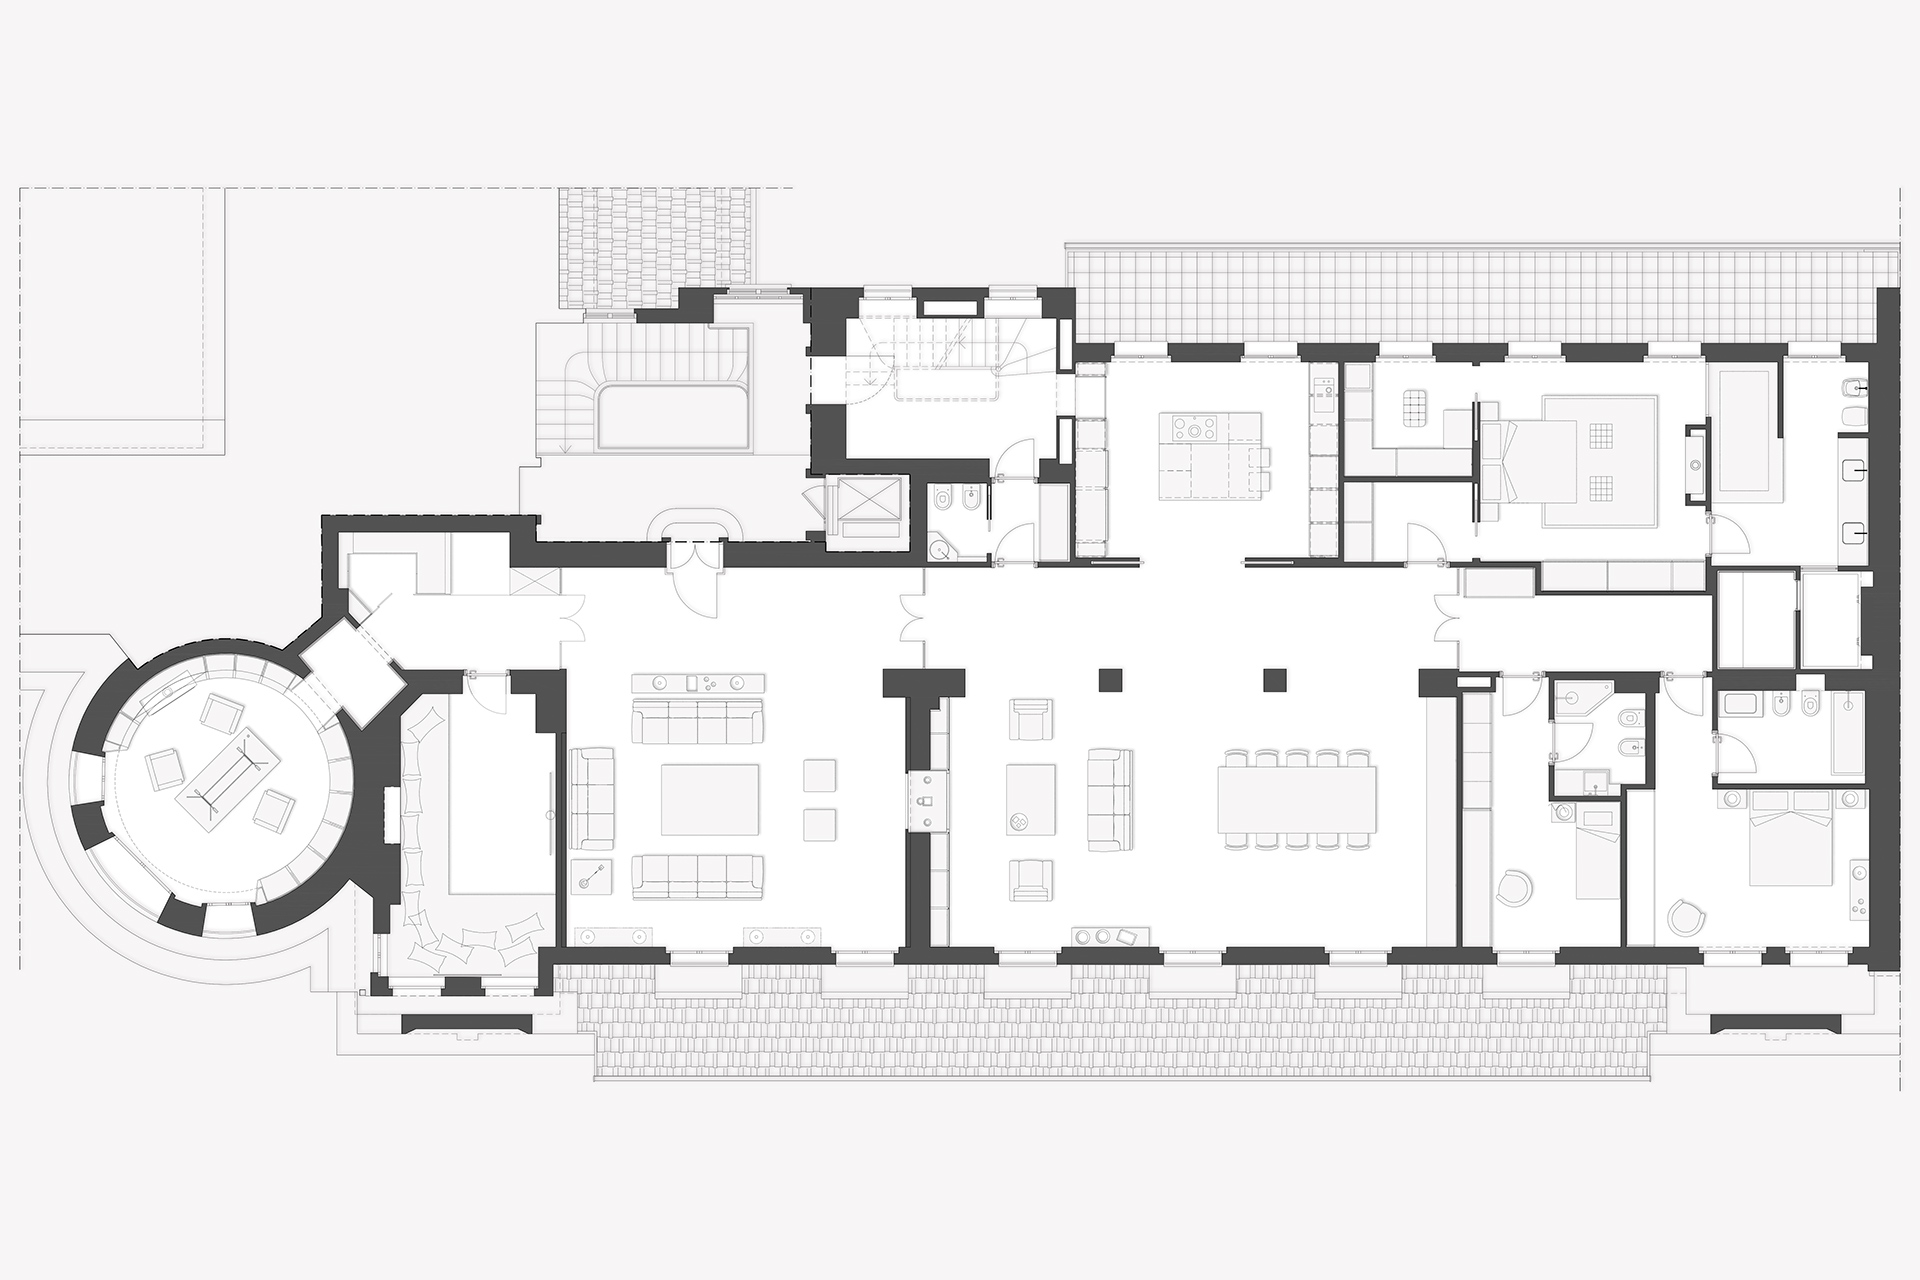 Studio Architettura - Roberto Bagnato - Milano - Progetto Santa Maria delle Grazie - Residenziale